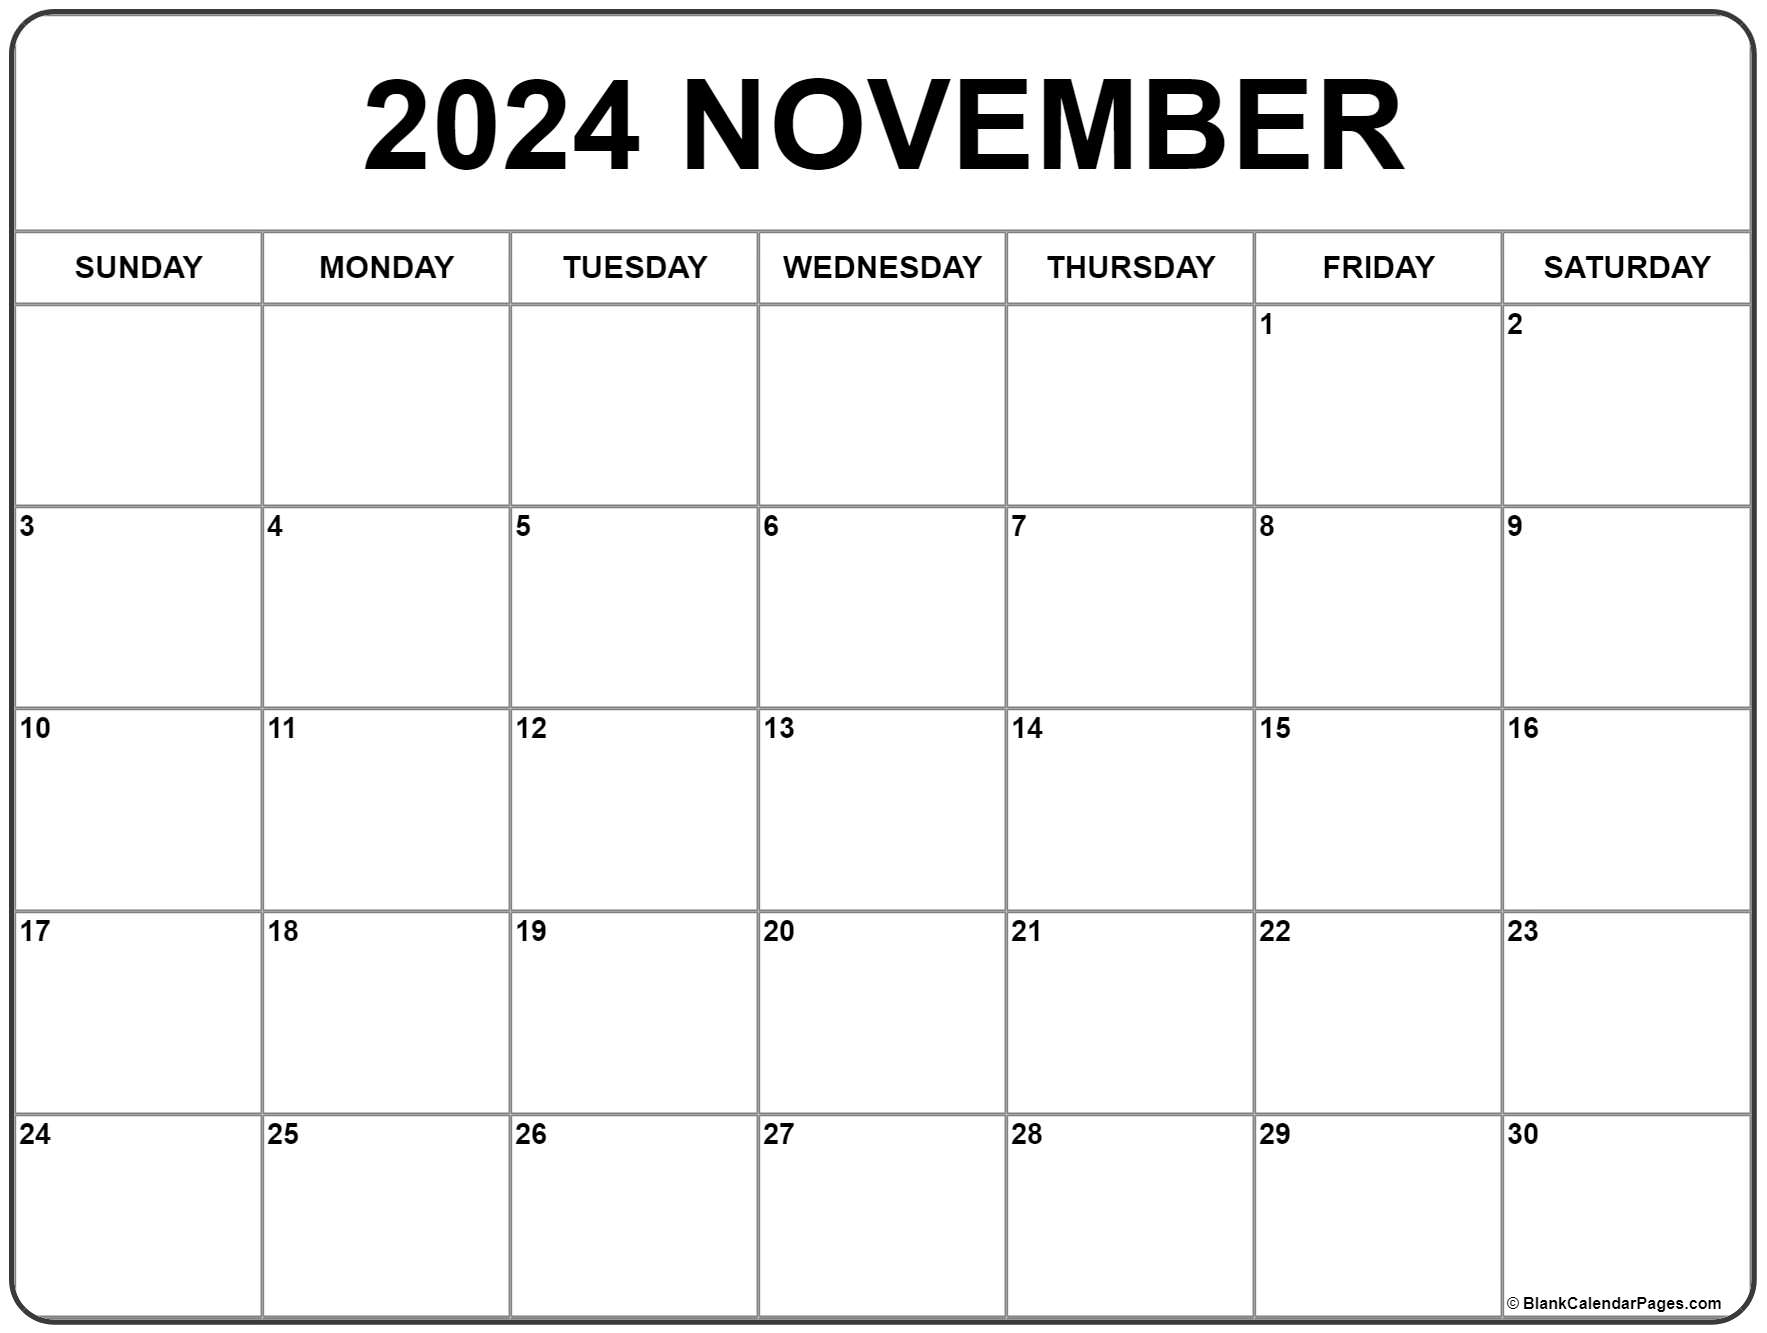 November 2020 calendar free printable calendar templates